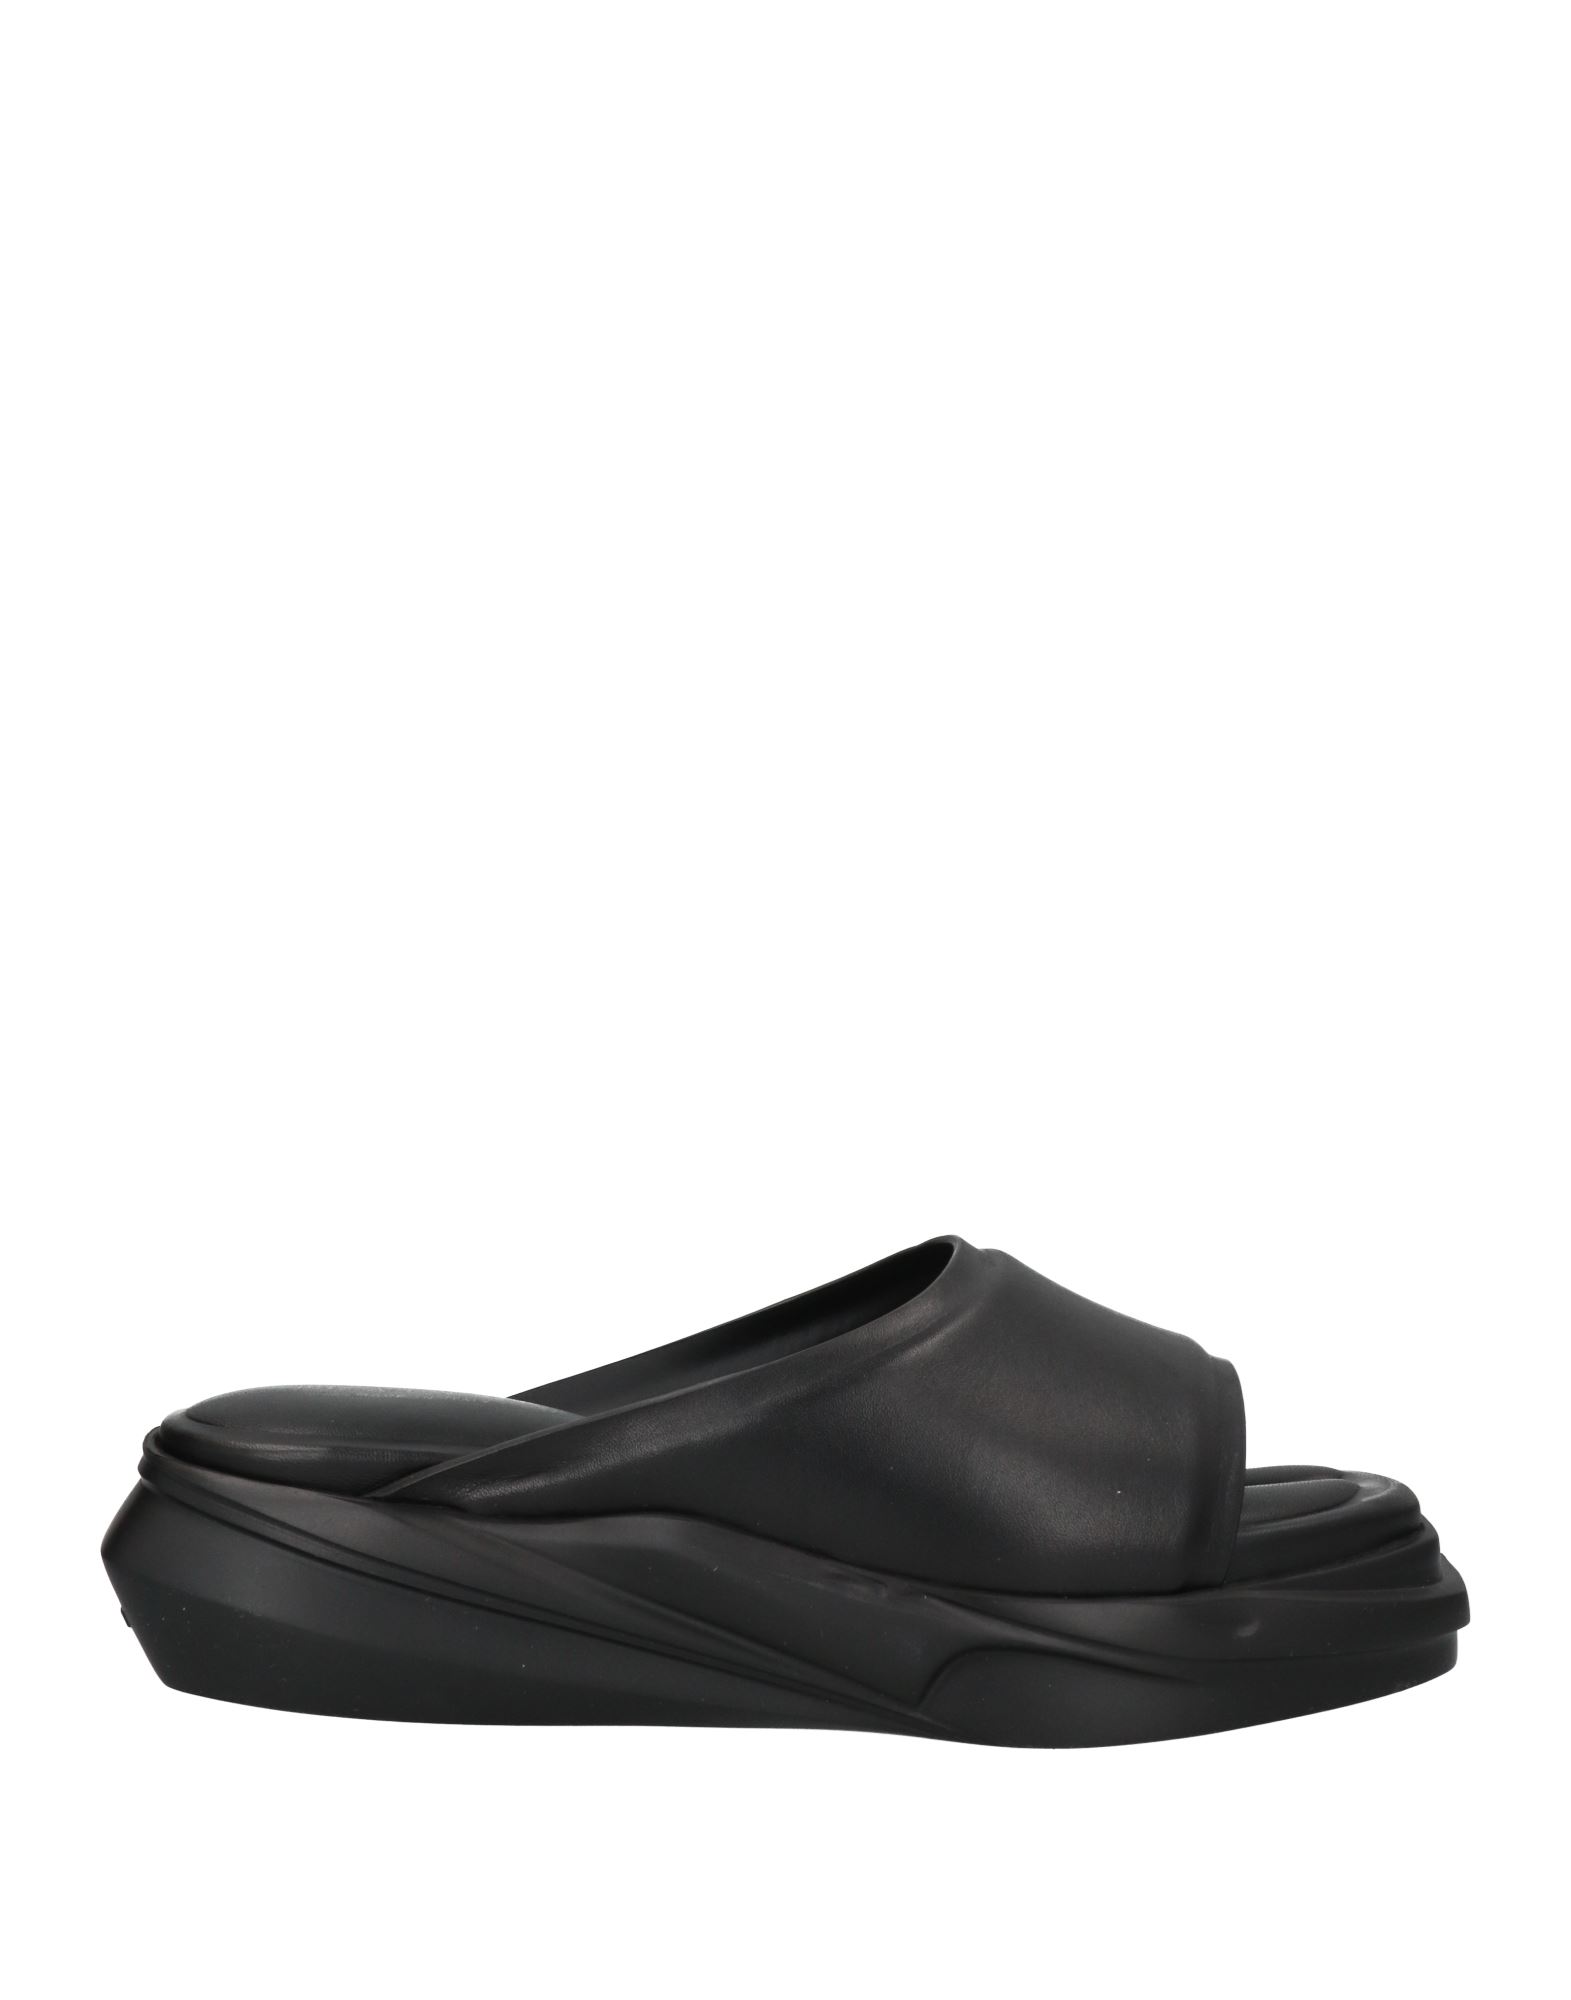 Shop Alyx 1017  9sm Woman Sandals Black Size 8 Soft Leather